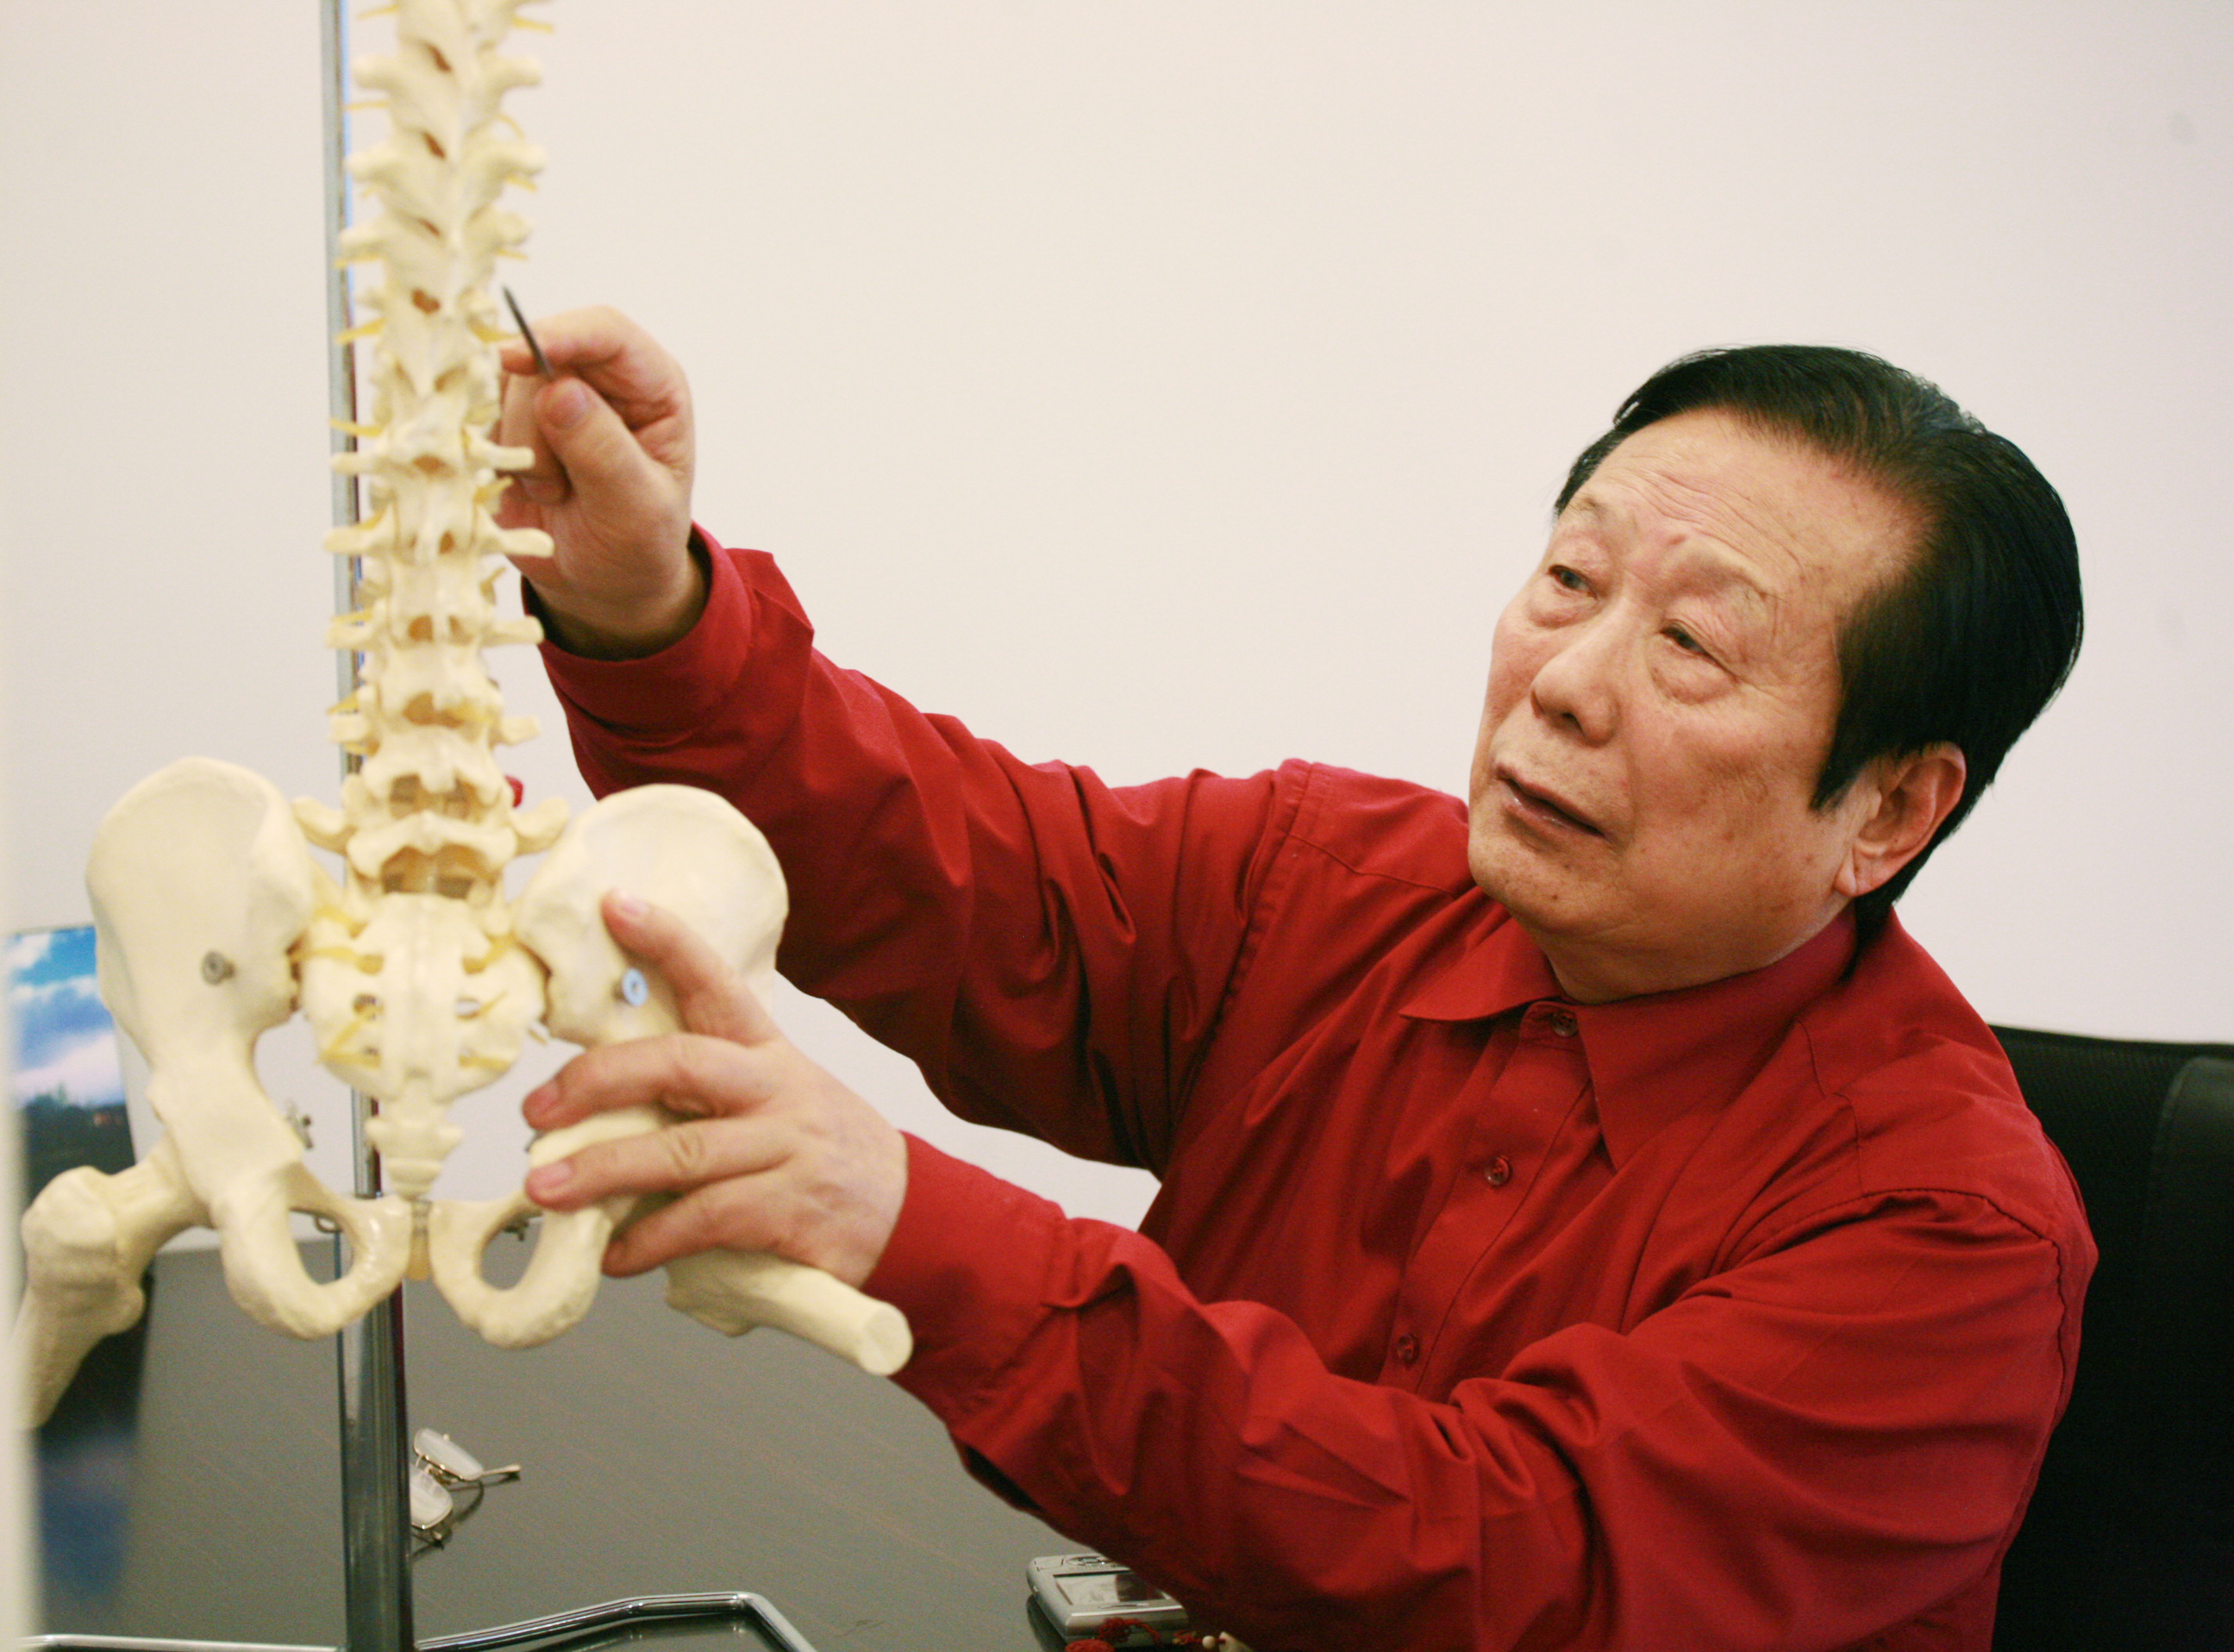 刁文鯧教授講解脊椎錯位引起病症的原理